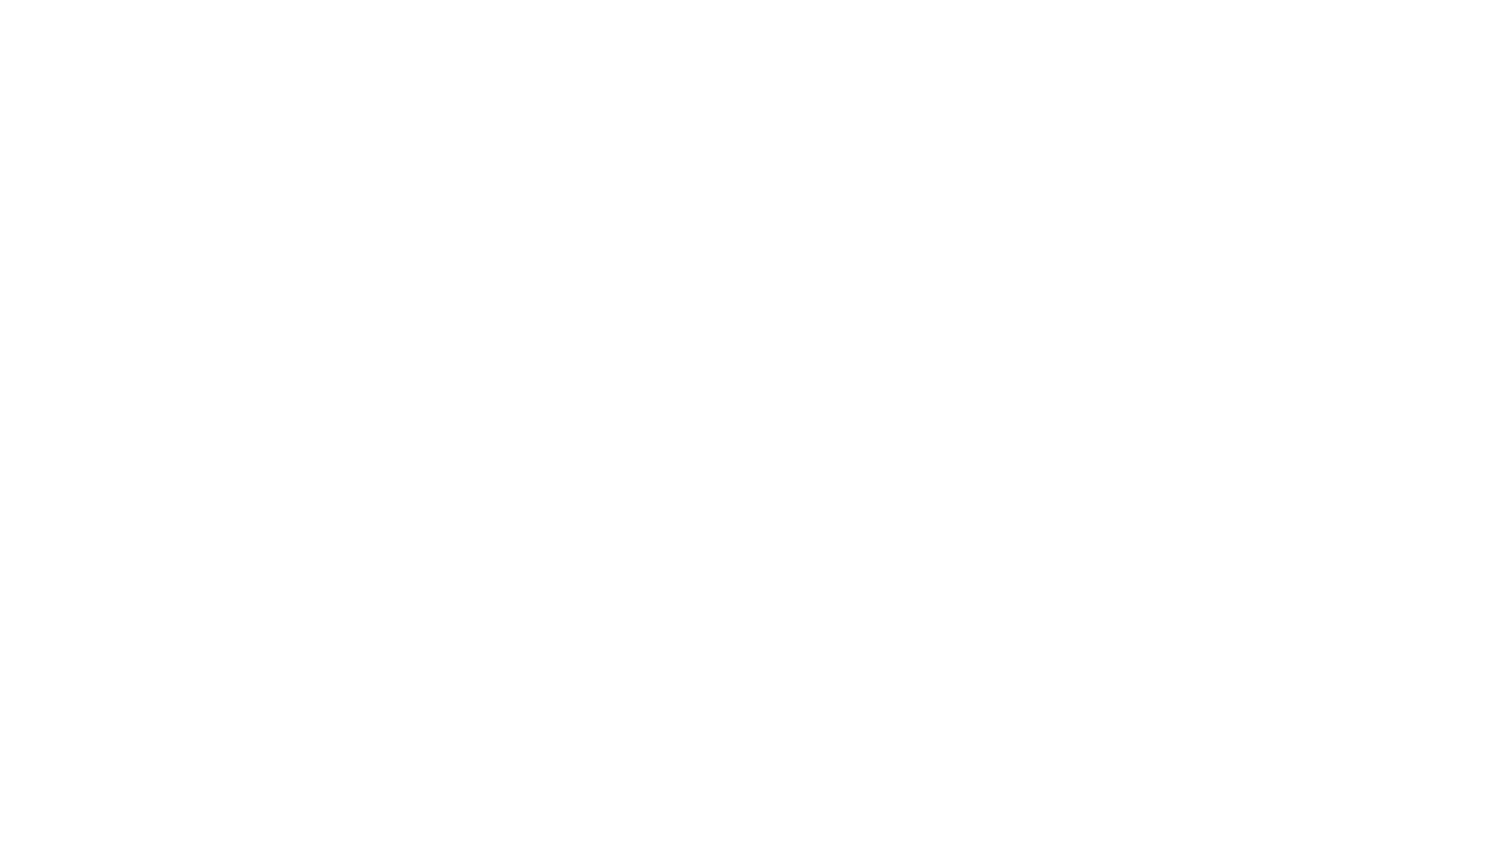 Ashley Gaffney Design